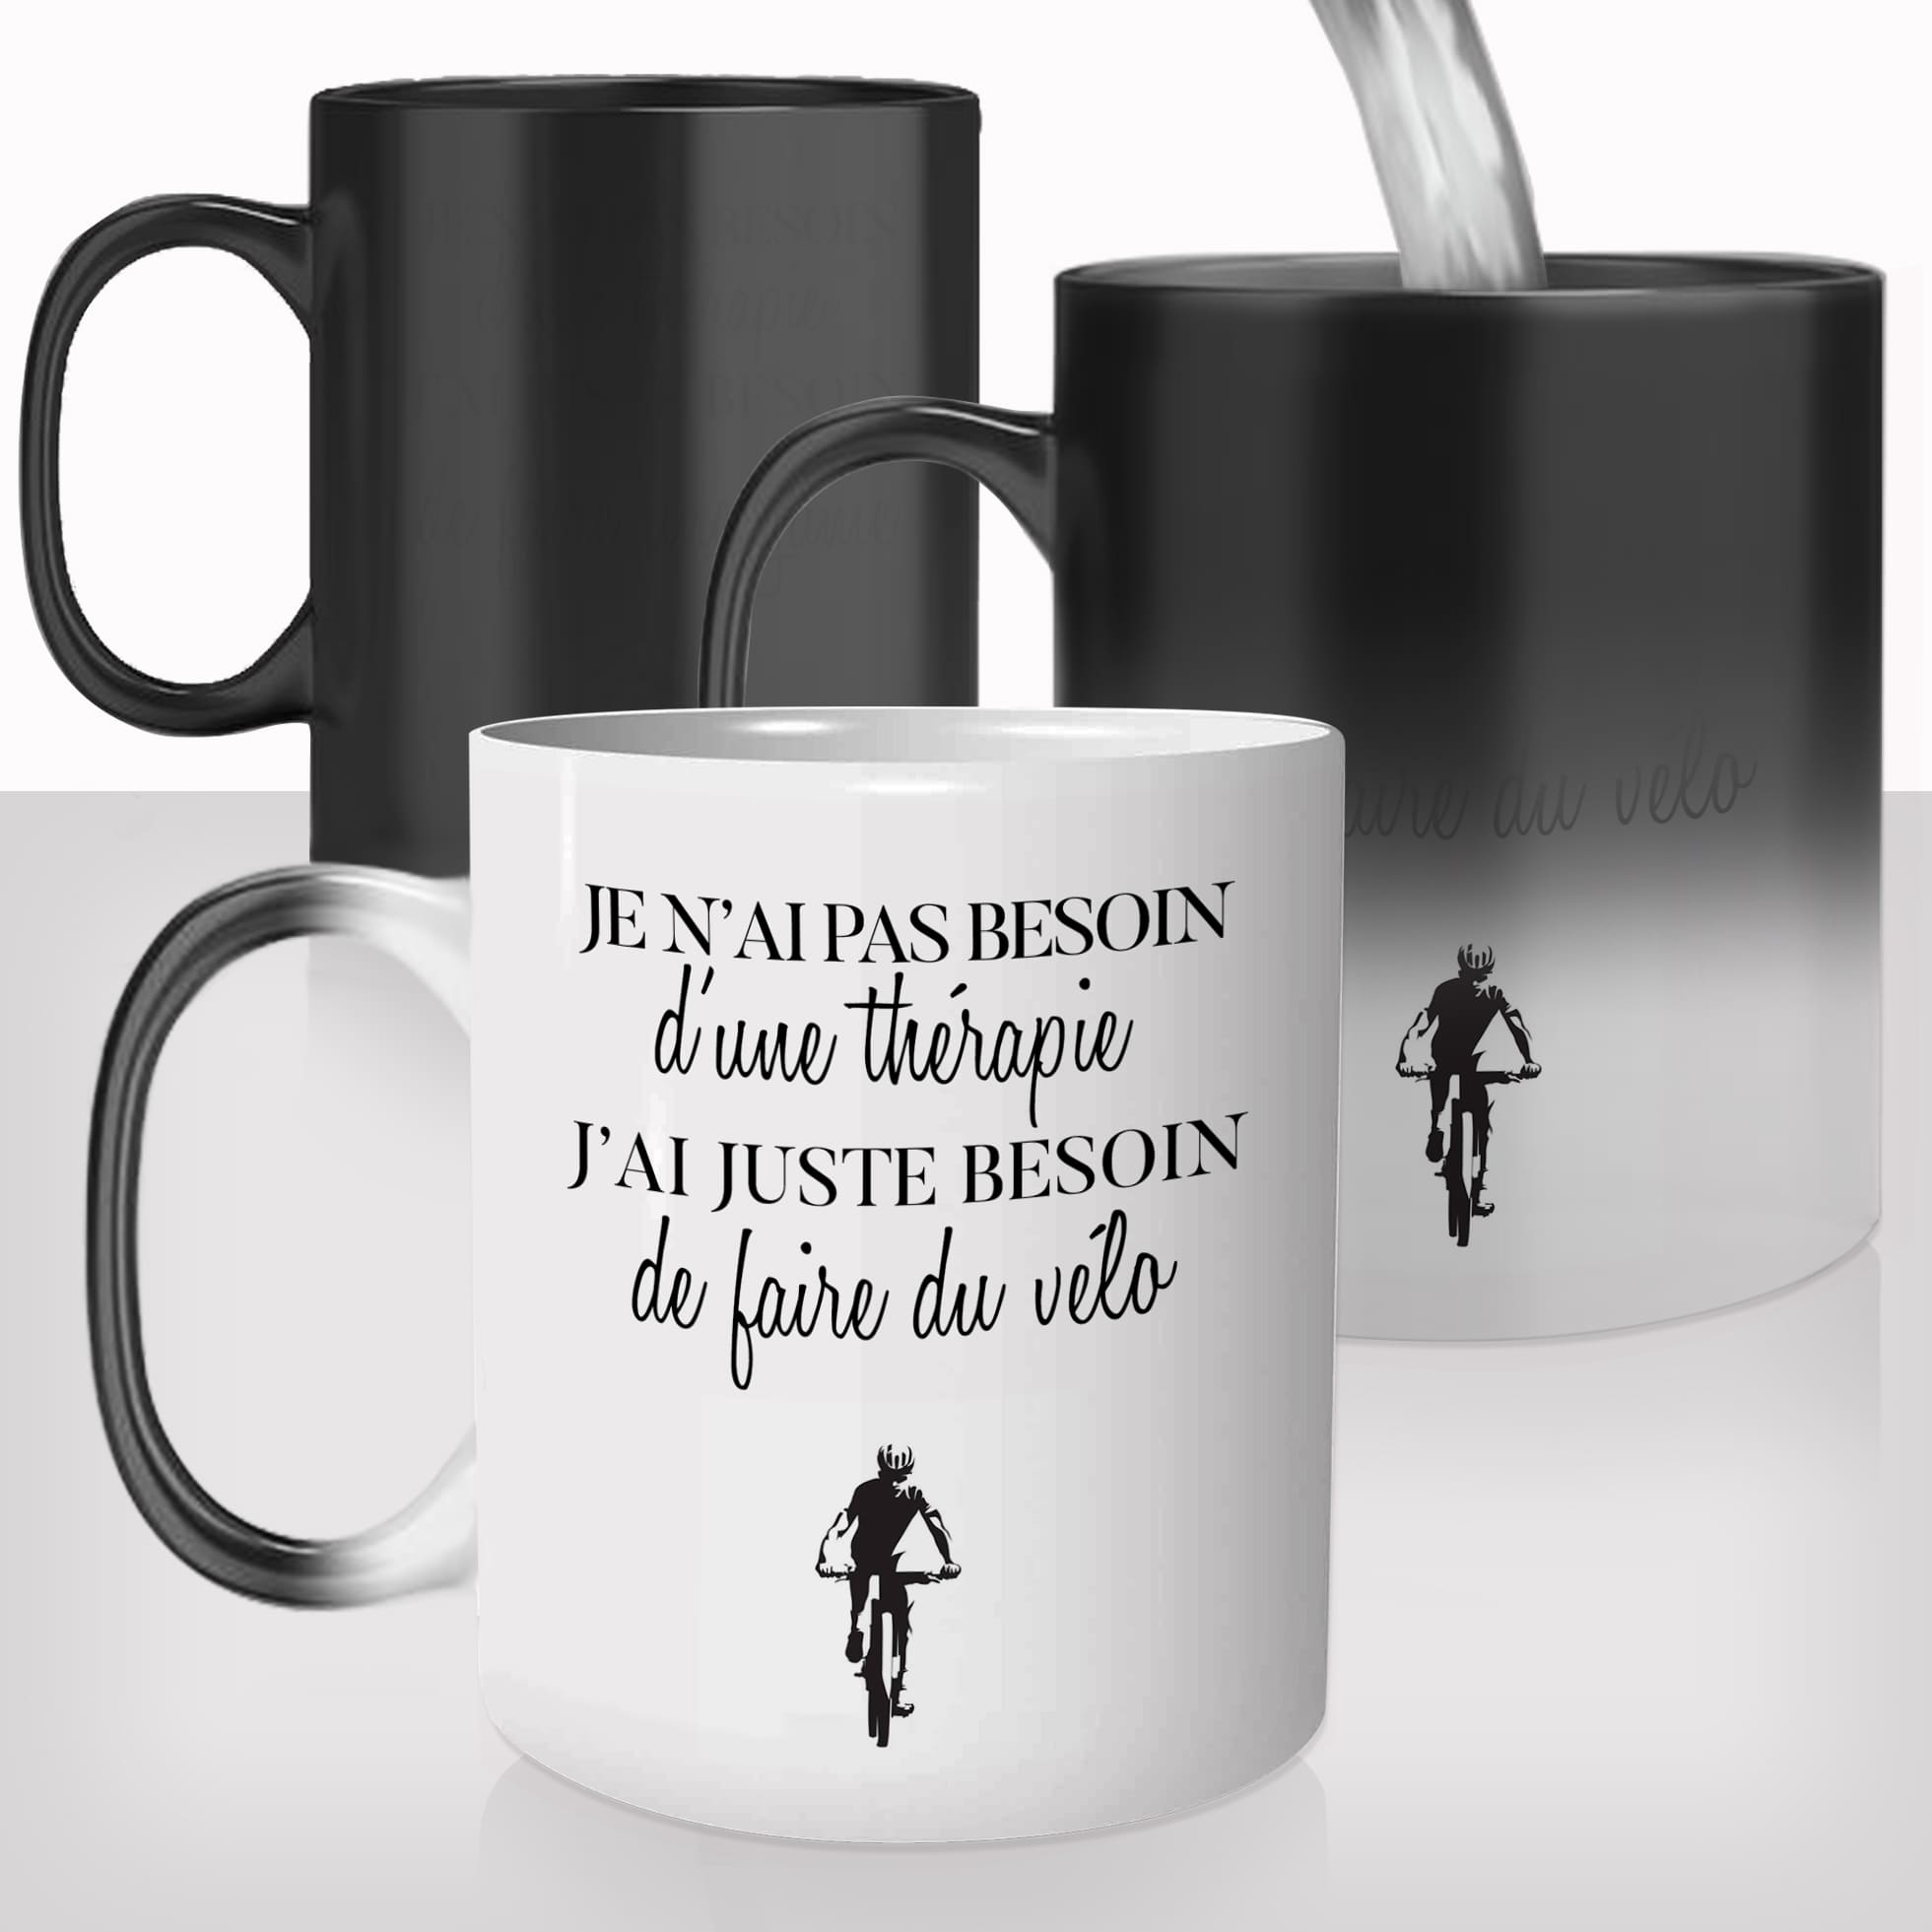 mug-magique-personnalisable-thermoreactif-thermique-tasse-thérapie-velo-cycliste-tour-de-france-rpm-vtt-sport-fun-idée-cadeau-original